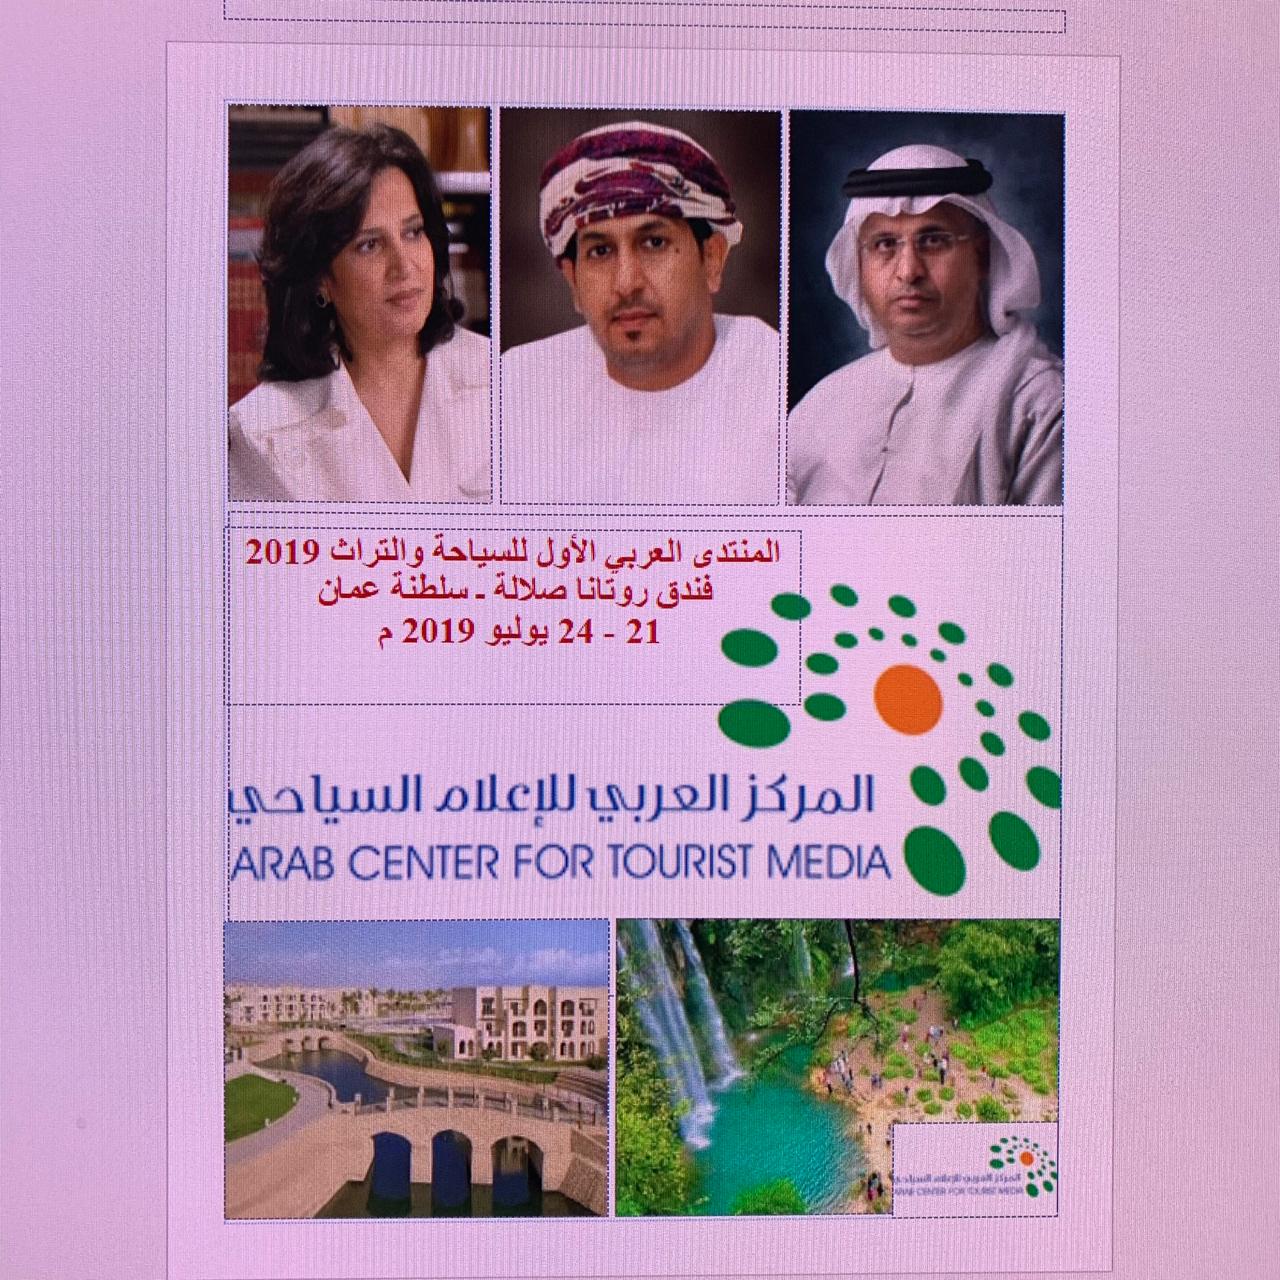 مشاركة اماراتية متميزة في المنتدى العربي الأول للسياحة والتراث 2019 بصلالة